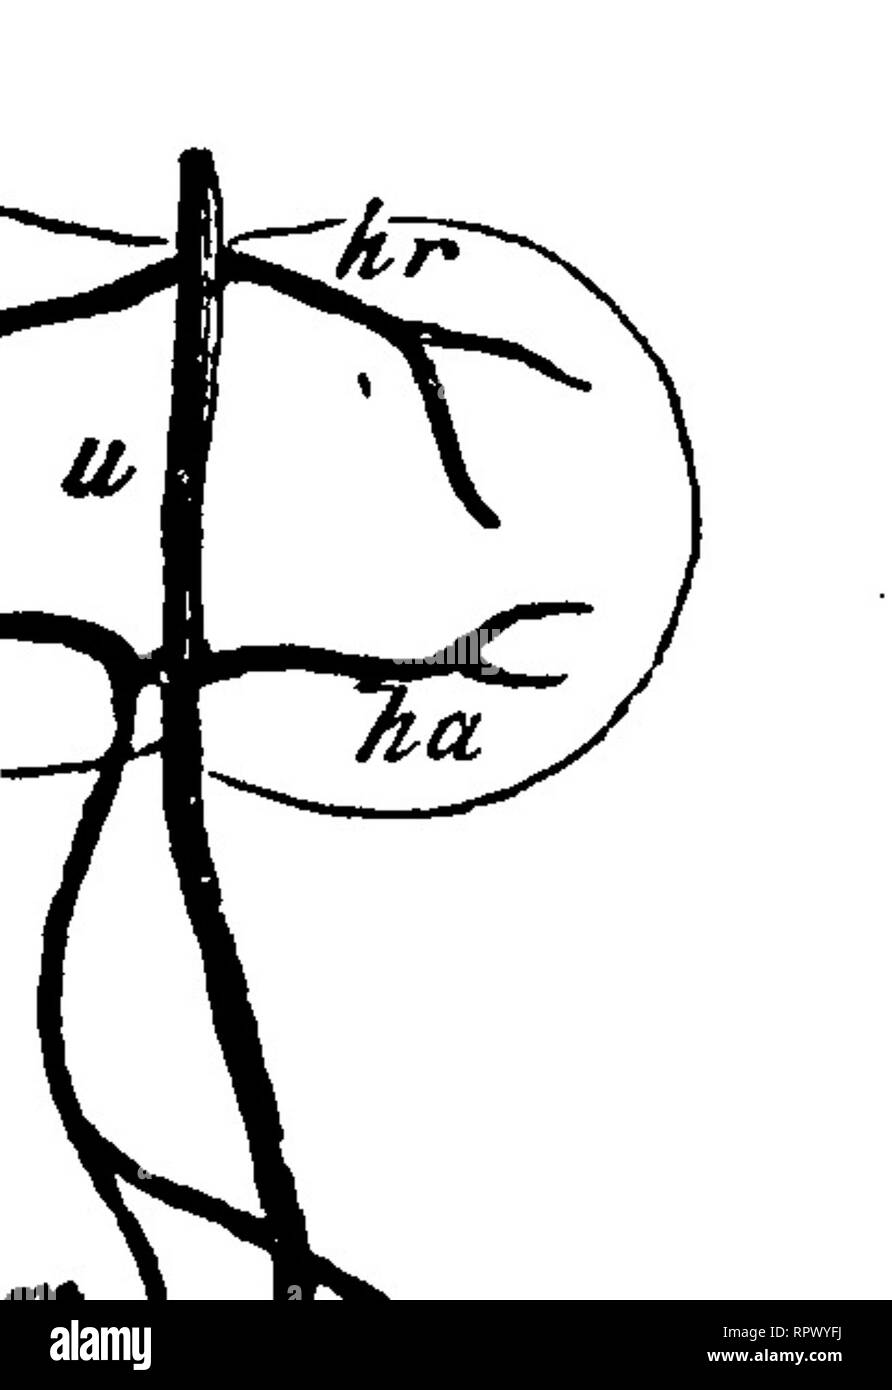 . La anatomia comparata degli animali domestici. Anatomia Veterinaria. Il FCETUS. 915 dalla sua parte anteriore molla due rami, le arcate aortica (Arcus aortce), che sono rivolte verso la testa dell' embrione, e sono successivamente in- rispecchia verso il basso e all'indietro. Essi si uniscono a costituire la singola aorta, che, nella sua tnrn^ si divide in due rami, il arterice vertehralis o primitivo aortce. Queste navi passare lungo la superficie inferiore dell'embrione, paralleli tra loro e fornire durante il loro corso di quattro o cinque divisioni, la ompJialo-arterie mesenterica, che Matteo Foto Stock